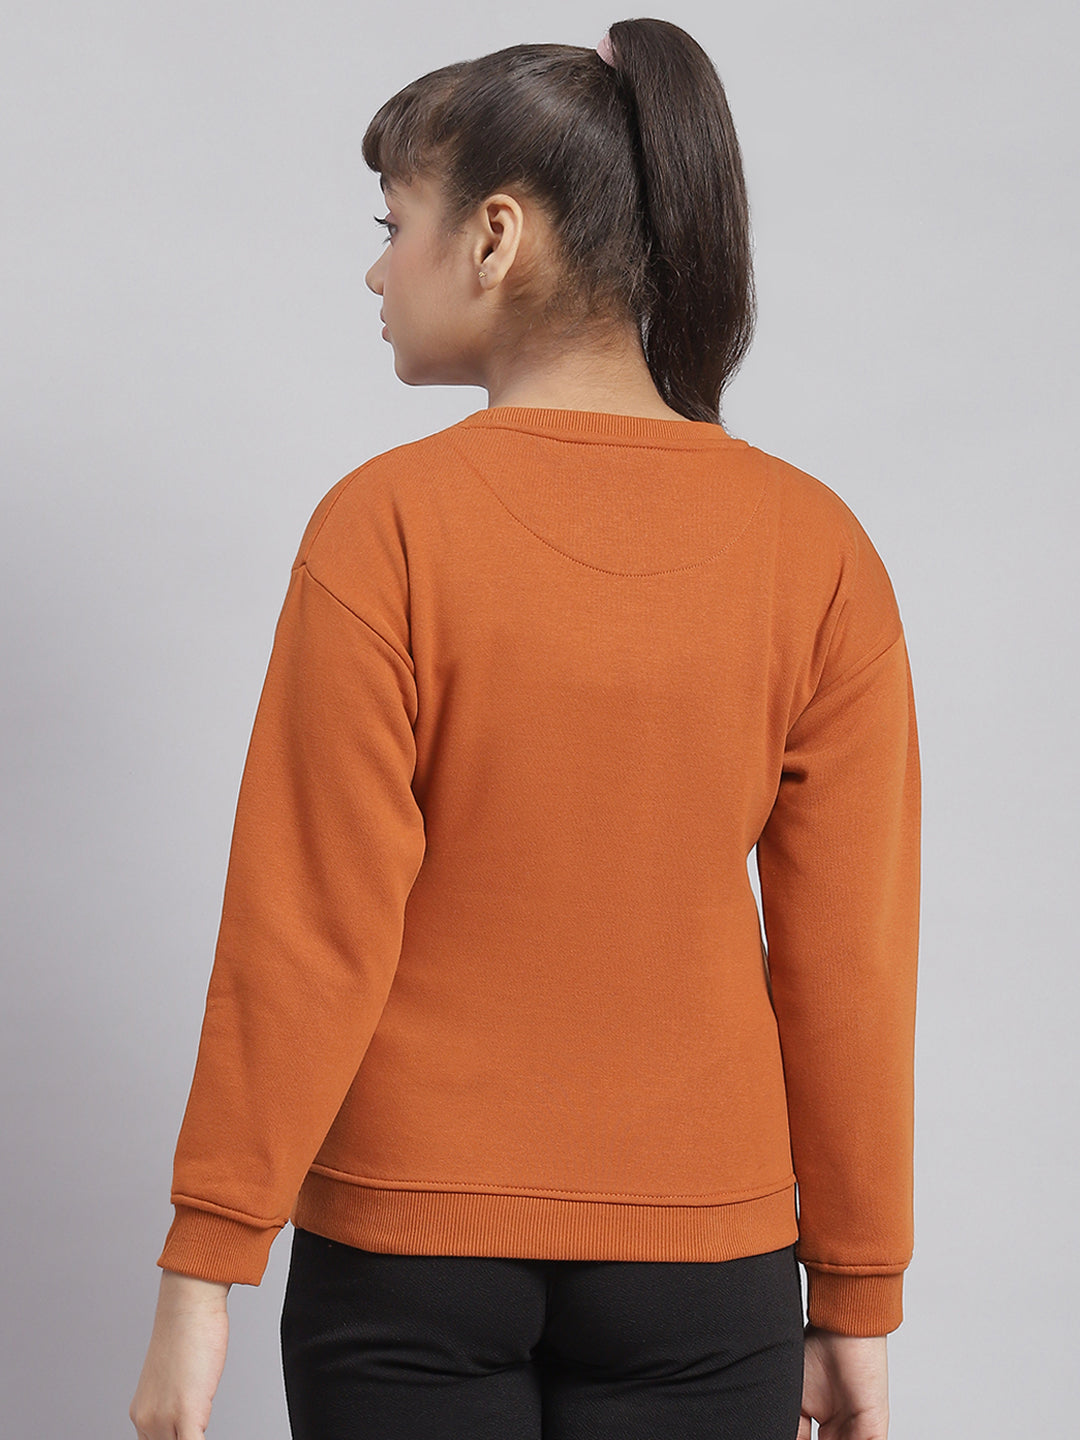 Girls Rust Printed Round Neck Full Sleeve Sweatshirt